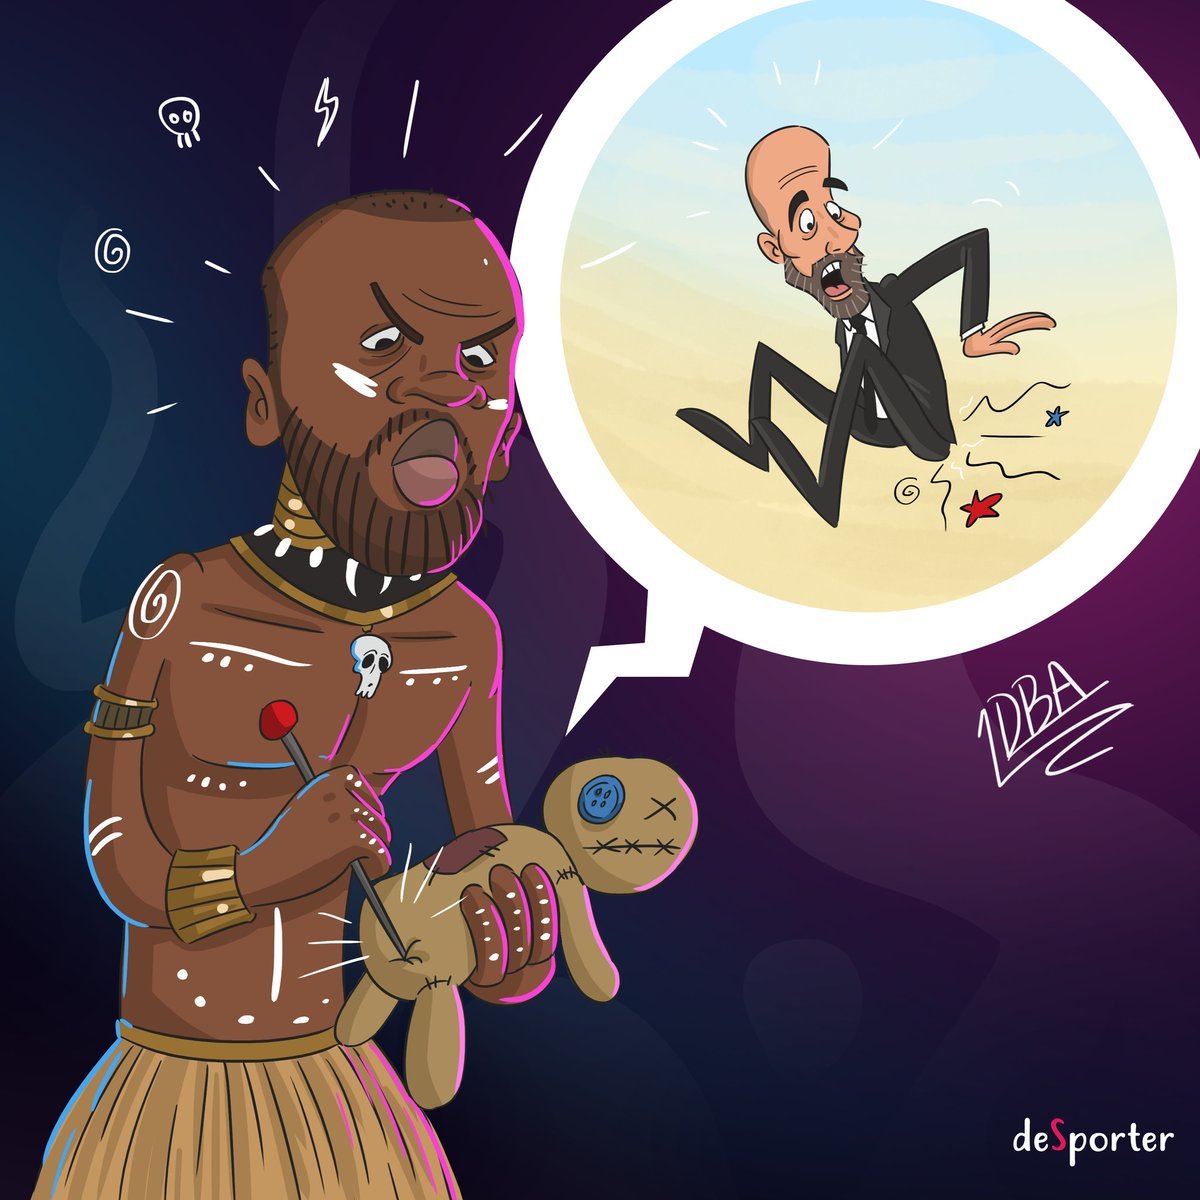 Dibujo que colgó en las redes el representante de Touré Yaya contra Pep.